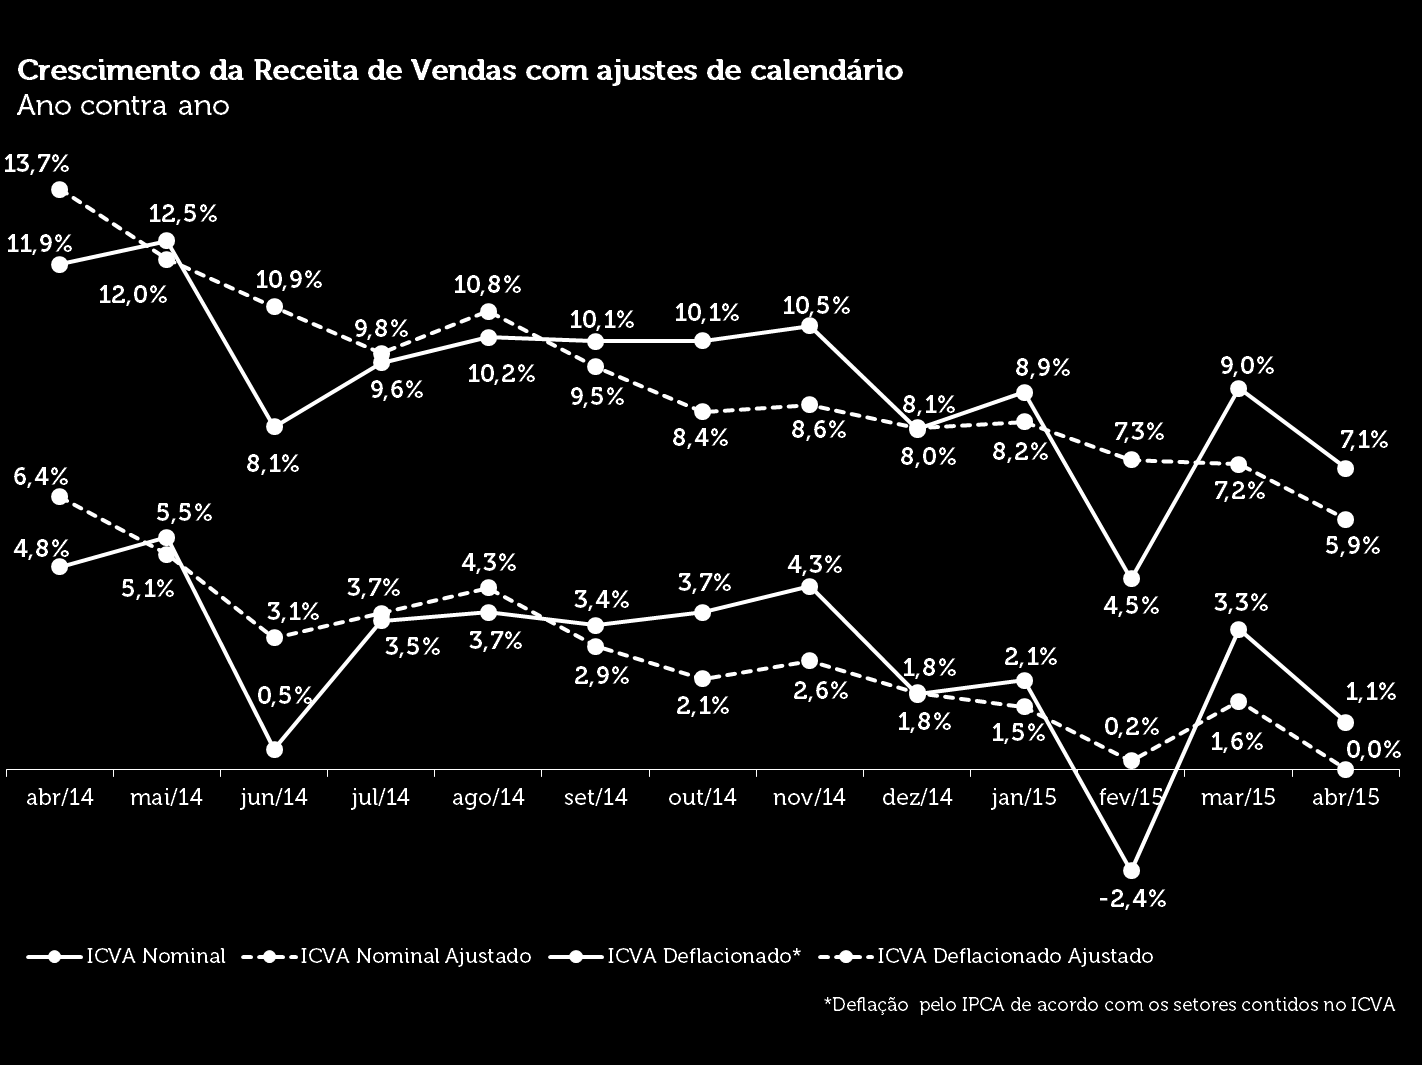 VAREJO AMPLIADO CRESCE 1,1% EM ABRIL, APONTA ICVA Indicador considera a receita de vendas deflacionada pelo IPCA em comparação com abril de 2014; no índice nominal, o crescimento foi de 7,1% A